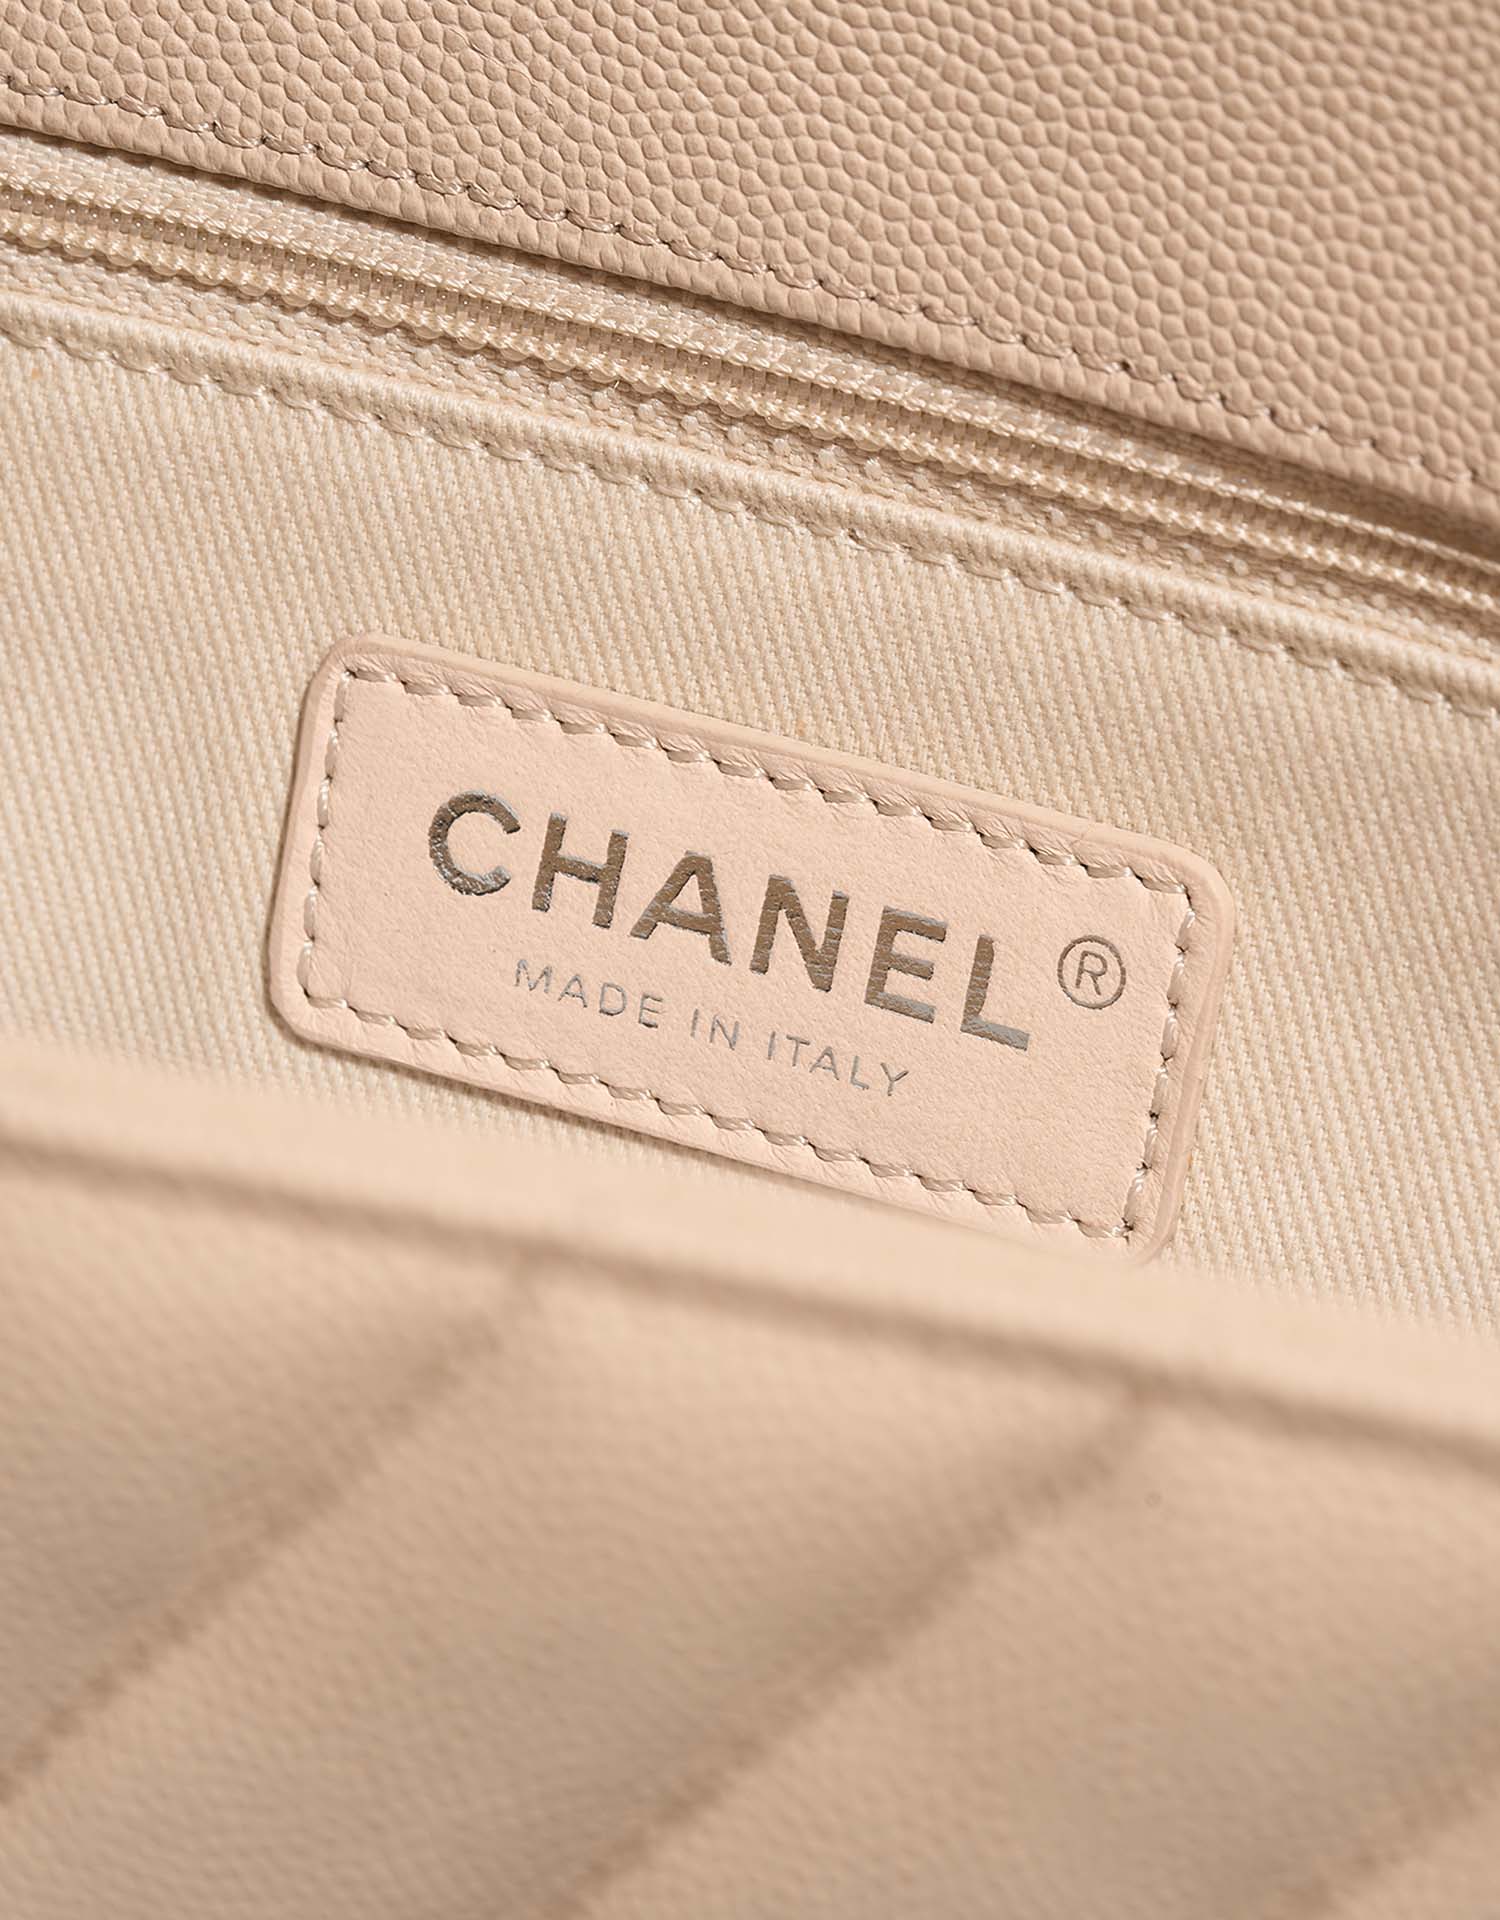 Chanel TimelessHandle Medium Beige Logo | Verkaufen Sie Ihre Designer-Tasche auf Saclab.com